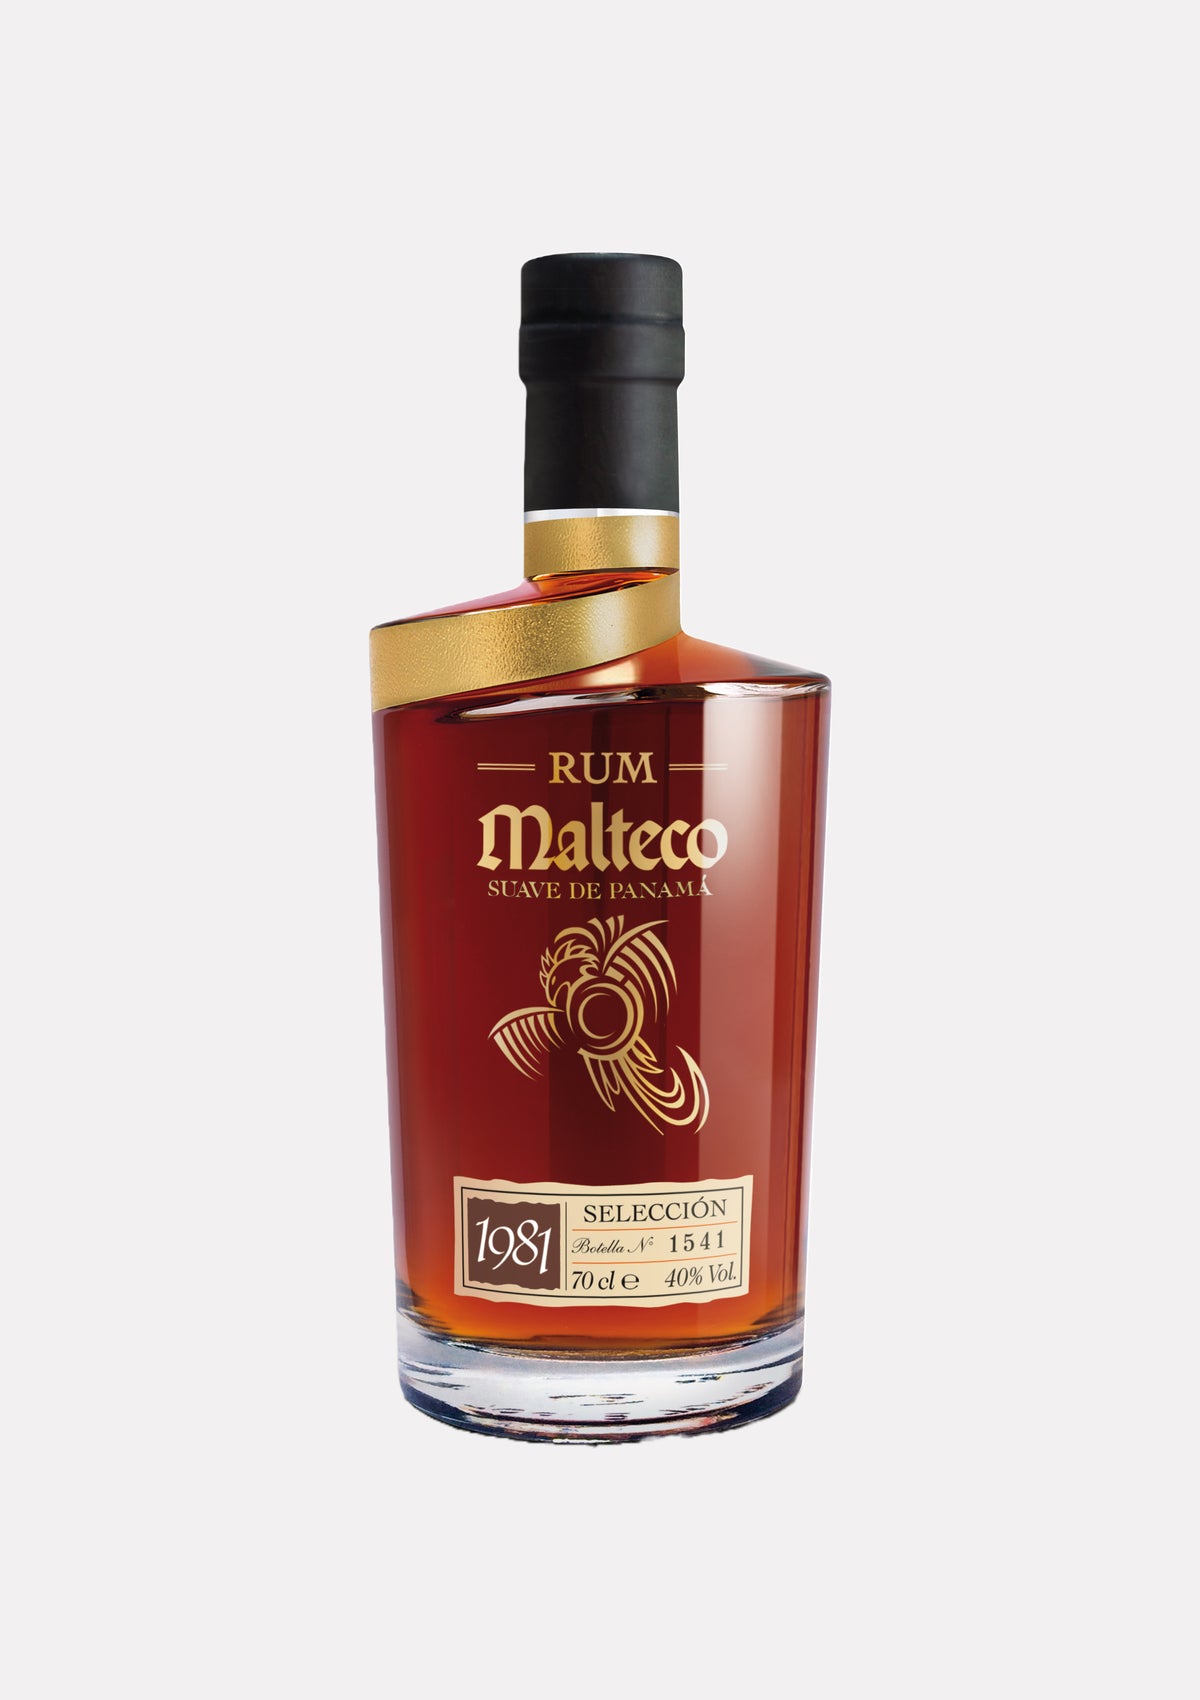 Rum Malteco 1981